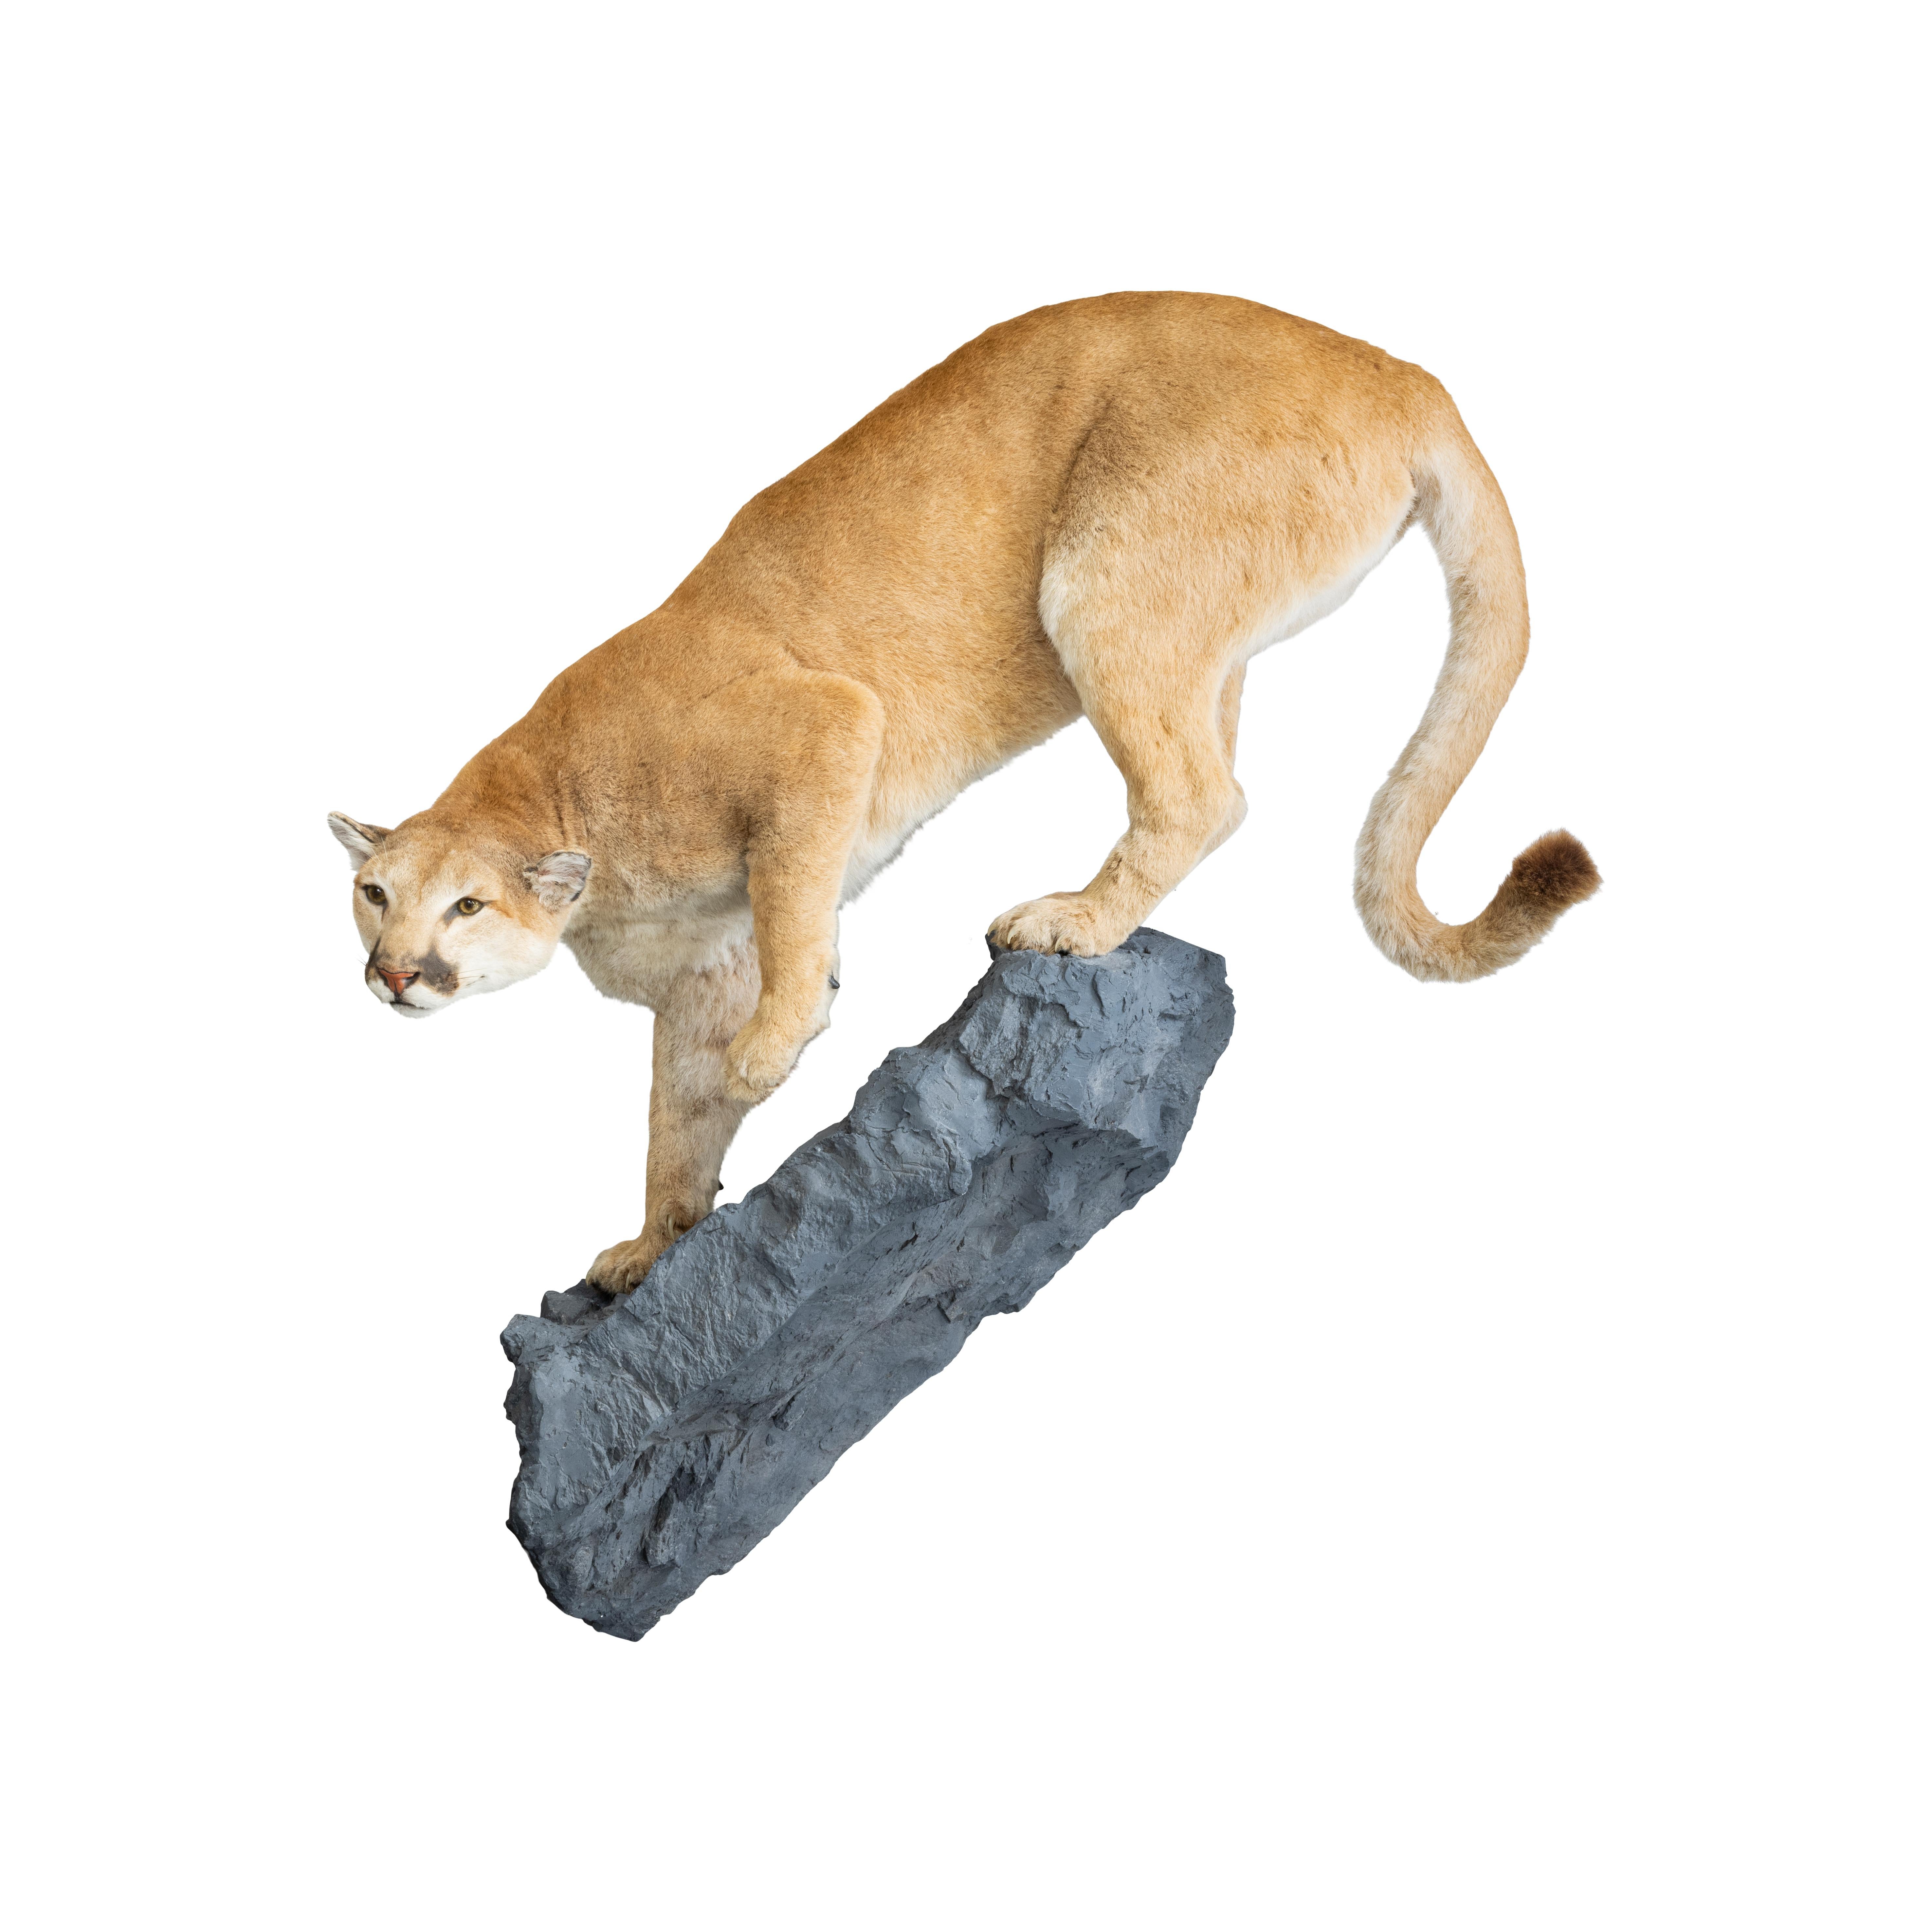 Idaho female cougar on faux rock ledge. Newer mount. Length including base 64